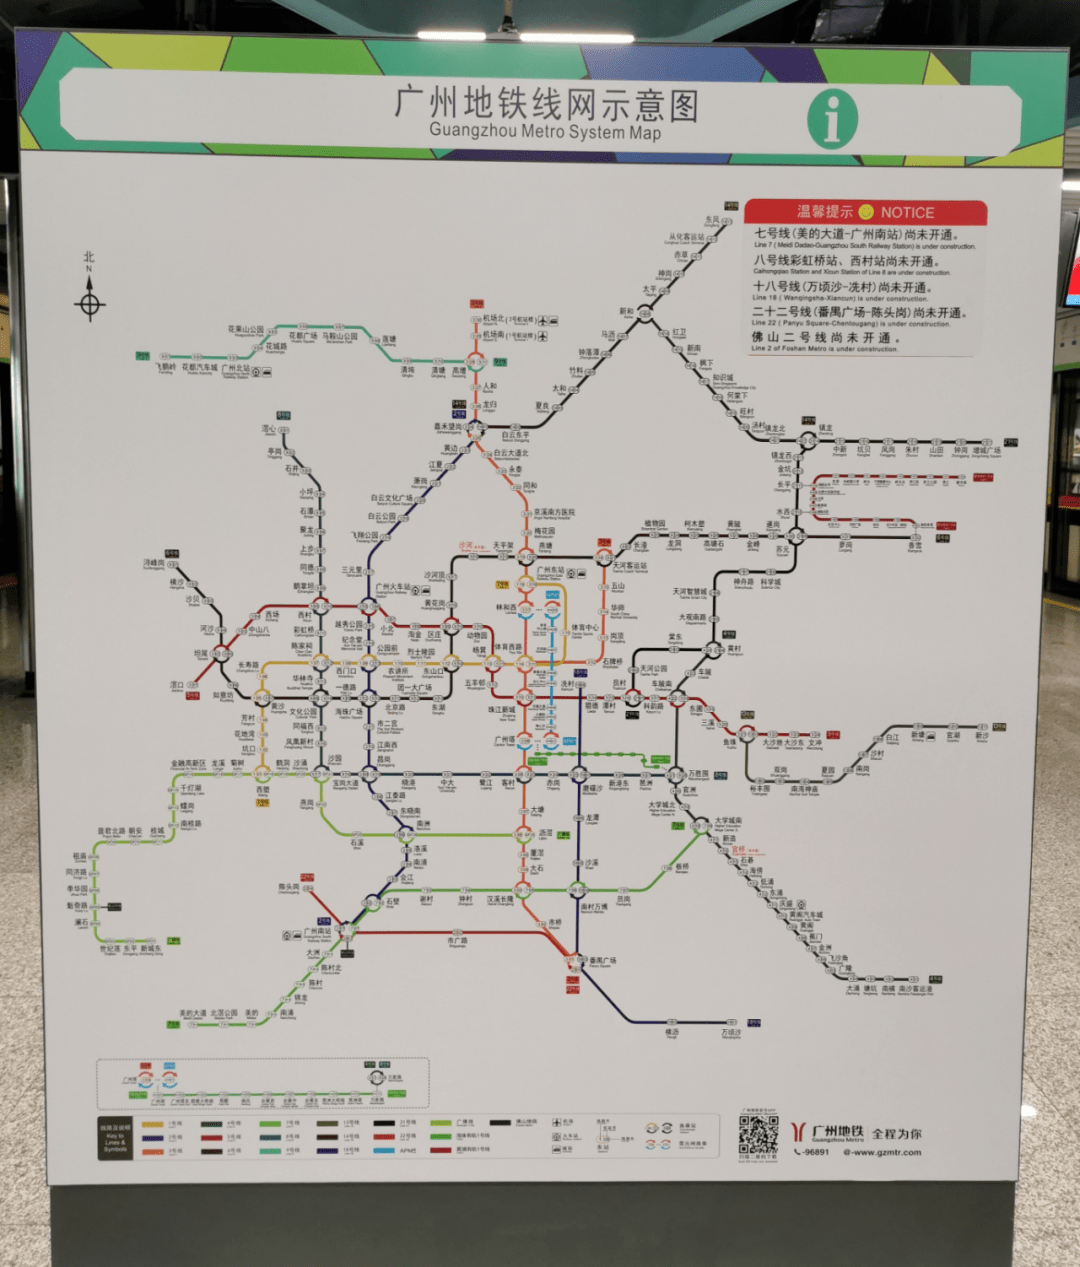 27分钟直达市区!广州地铁18号线或9月底开通运营!